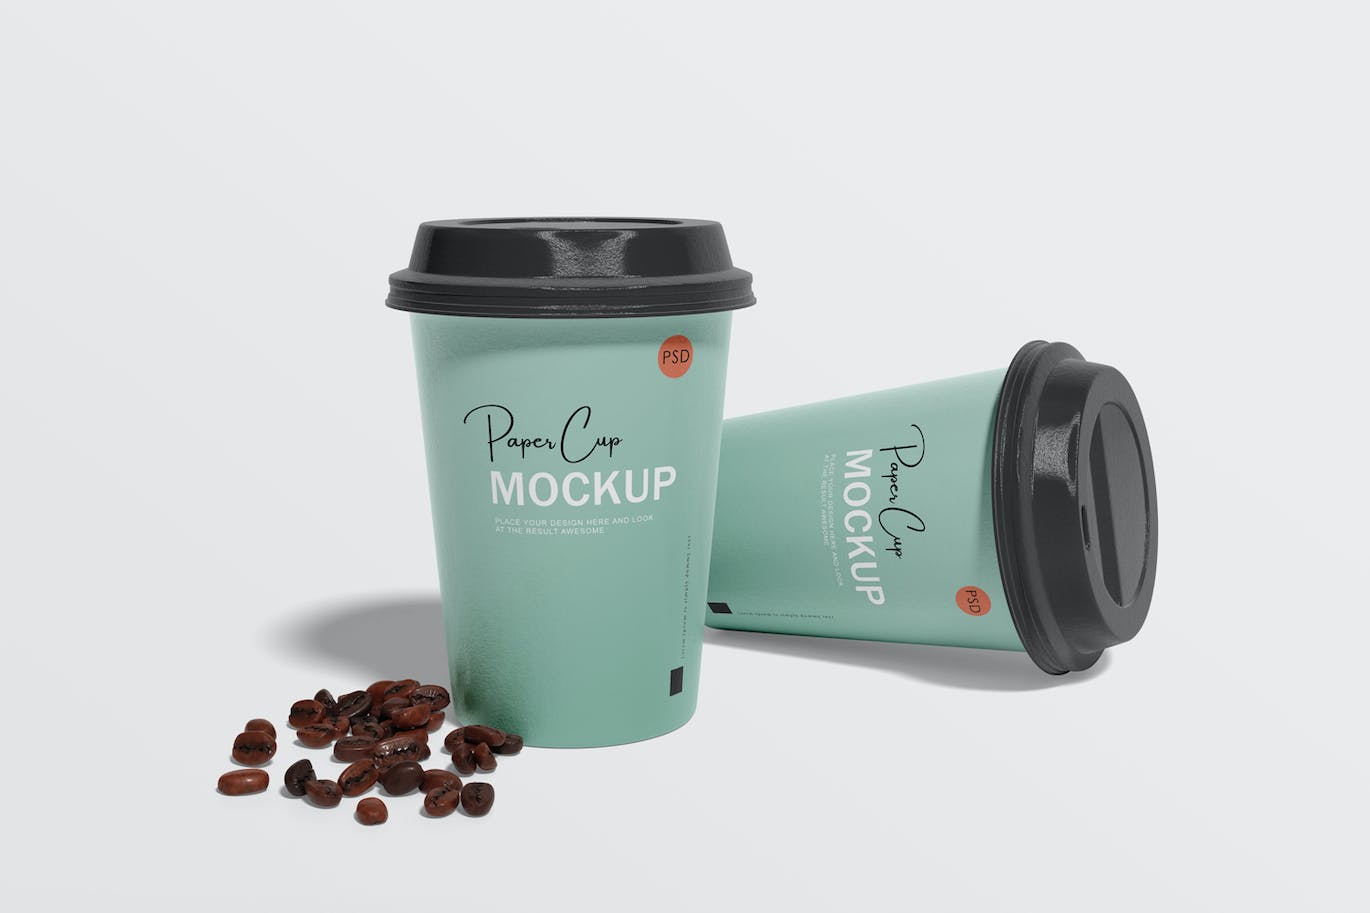 纸咖啡杯品牌设计样机 Paper coffee cup mockup 样机素材 第2张